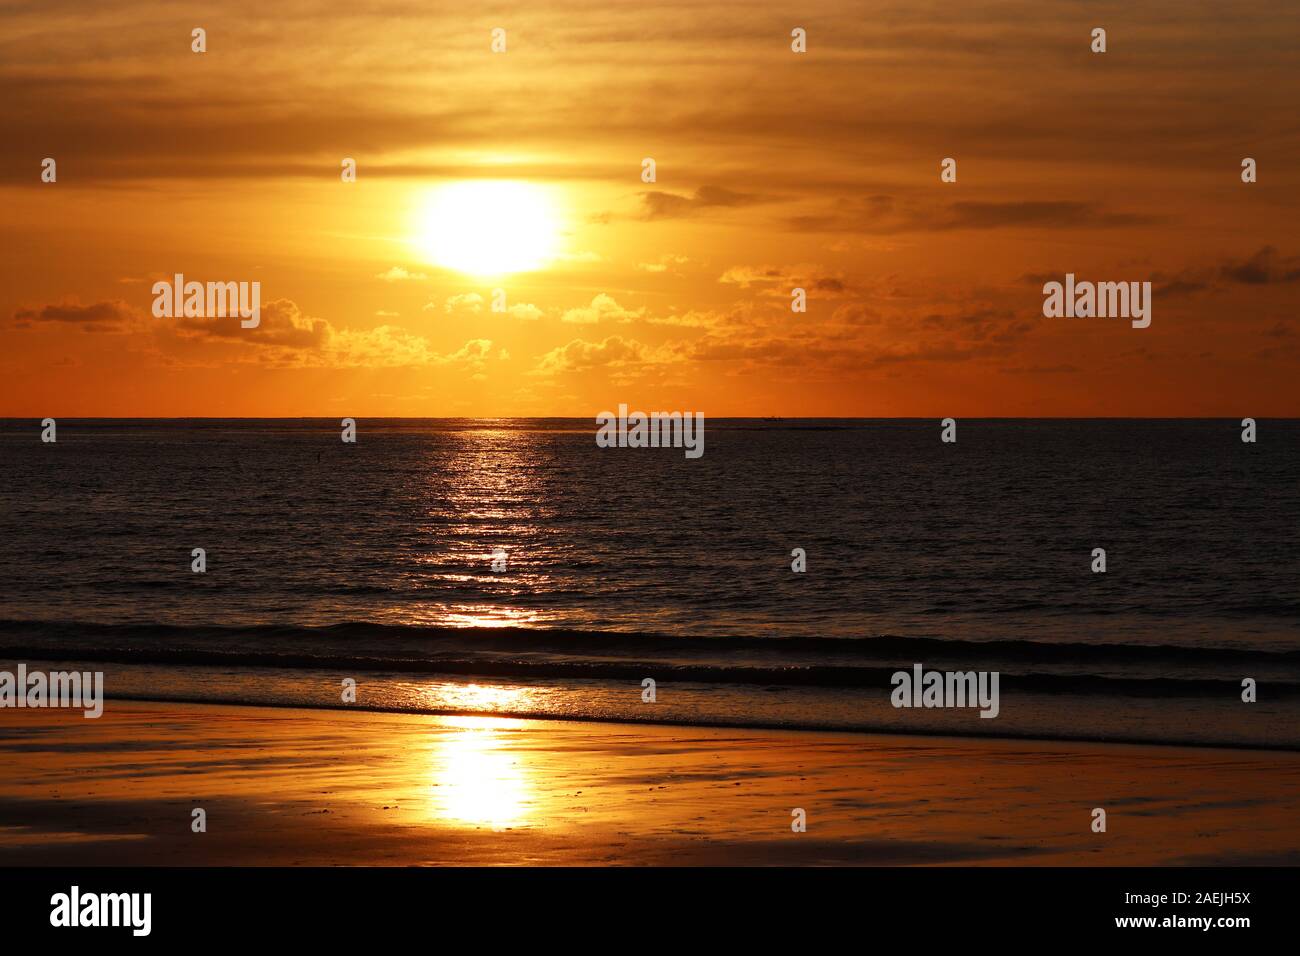 Tramonto su di una spiaggia di sabbia, serata mare, sfondo arancione Sun è riflessa nel drammatico le onde del mare. Acqua scura e nuvole all'orizzonte Foto Stock